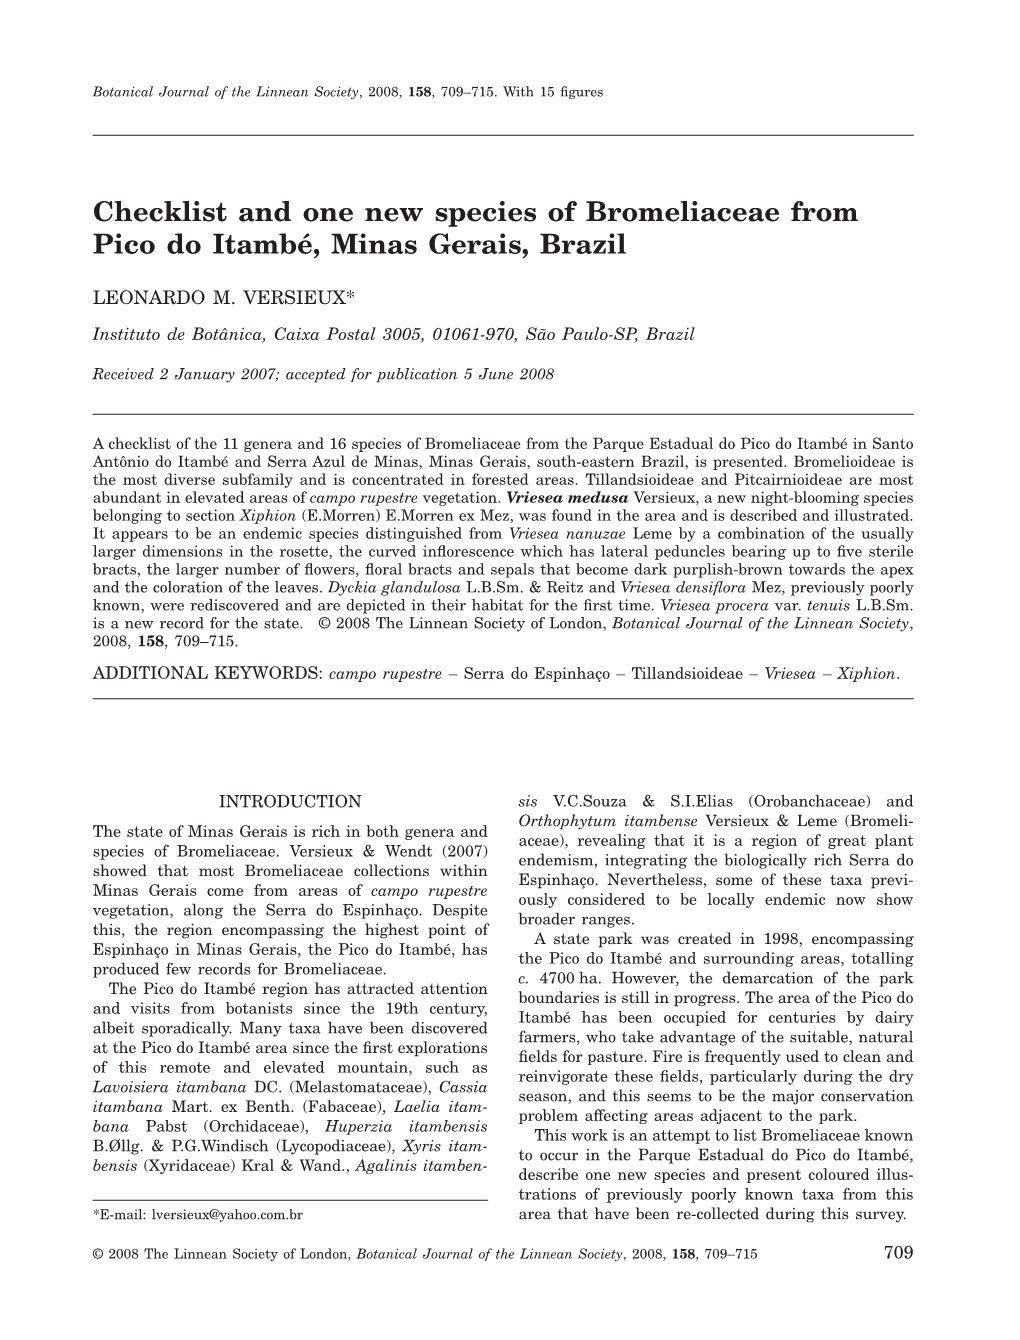 Checklist and One New Species of Bromeliaceae from Pico Do Itambé, Minas Gerais, Brazil